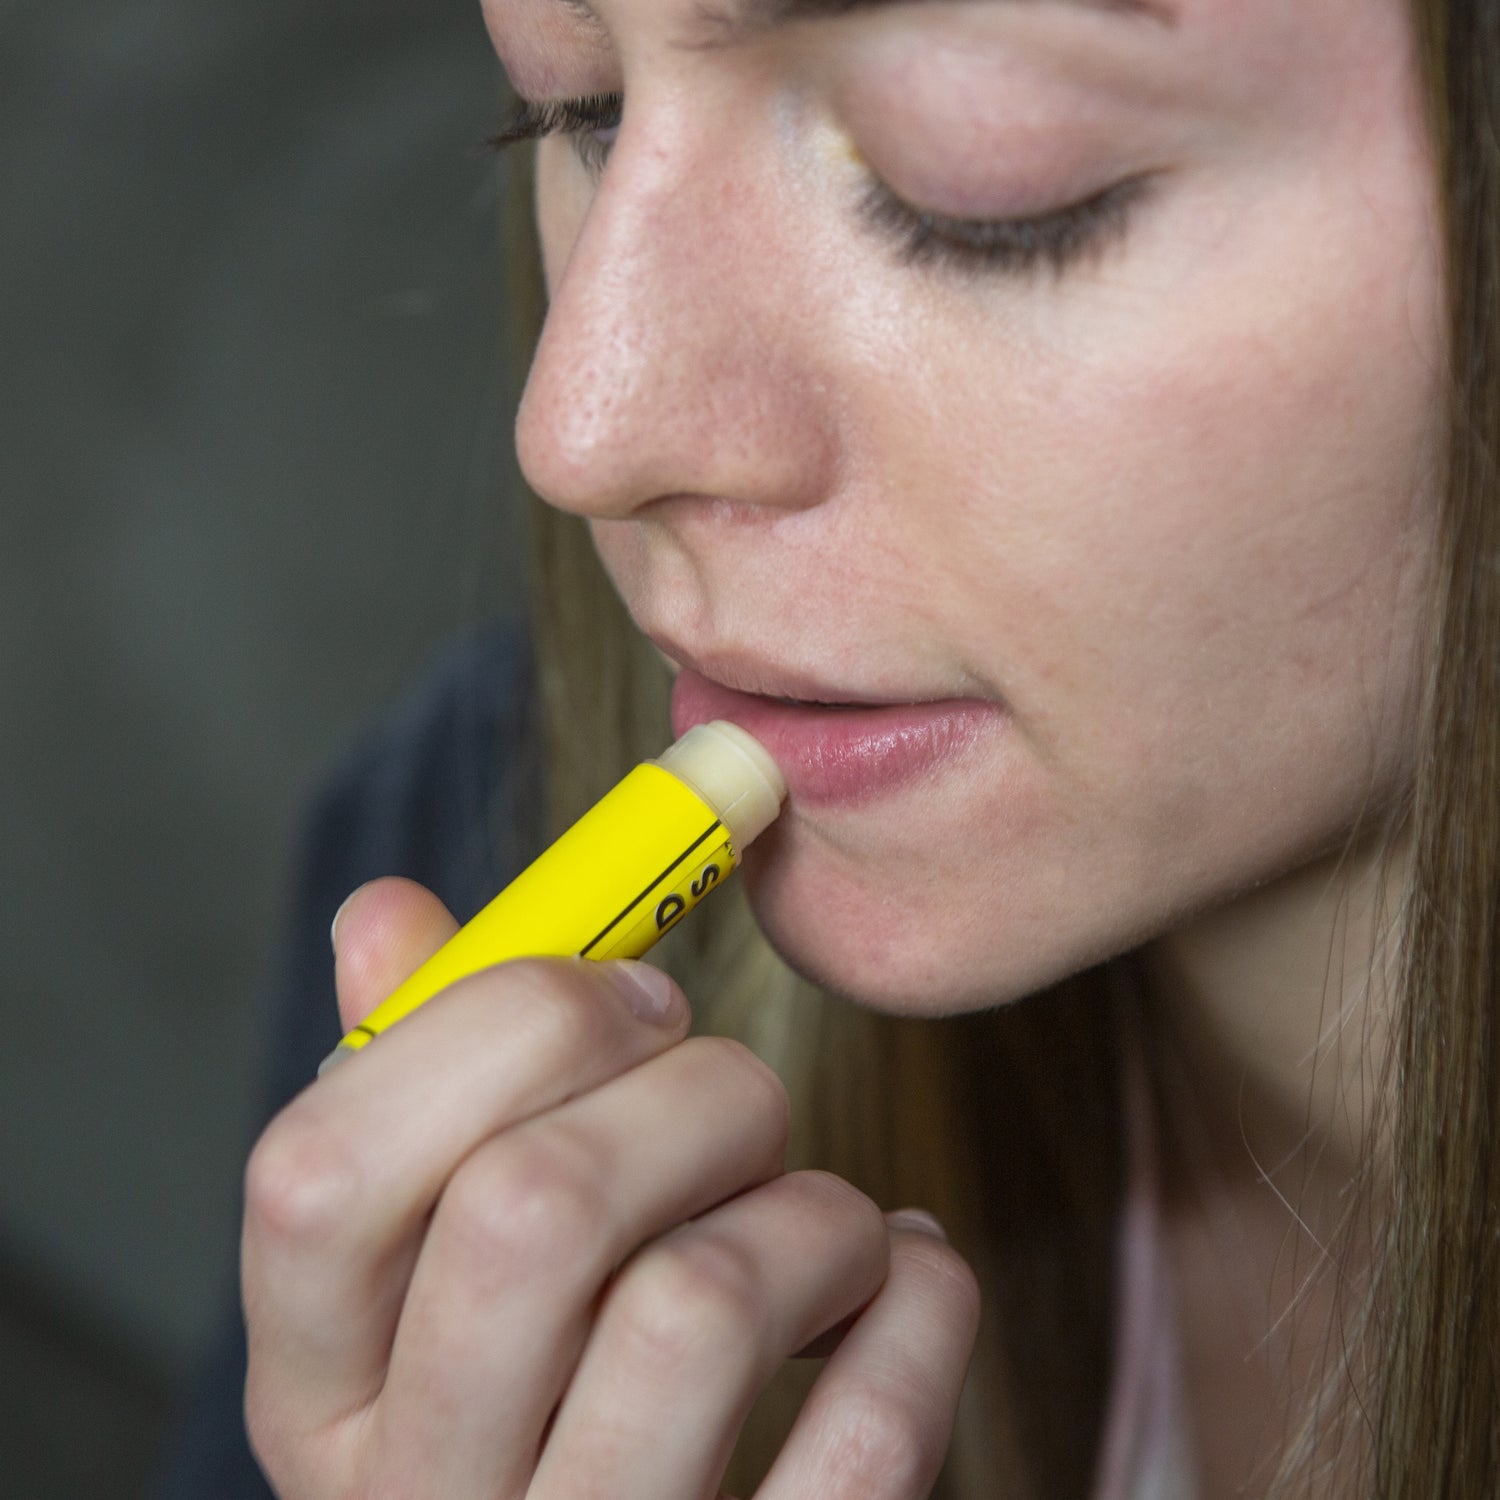 Kit de baume à lèvres à la cire d'abeille DIY